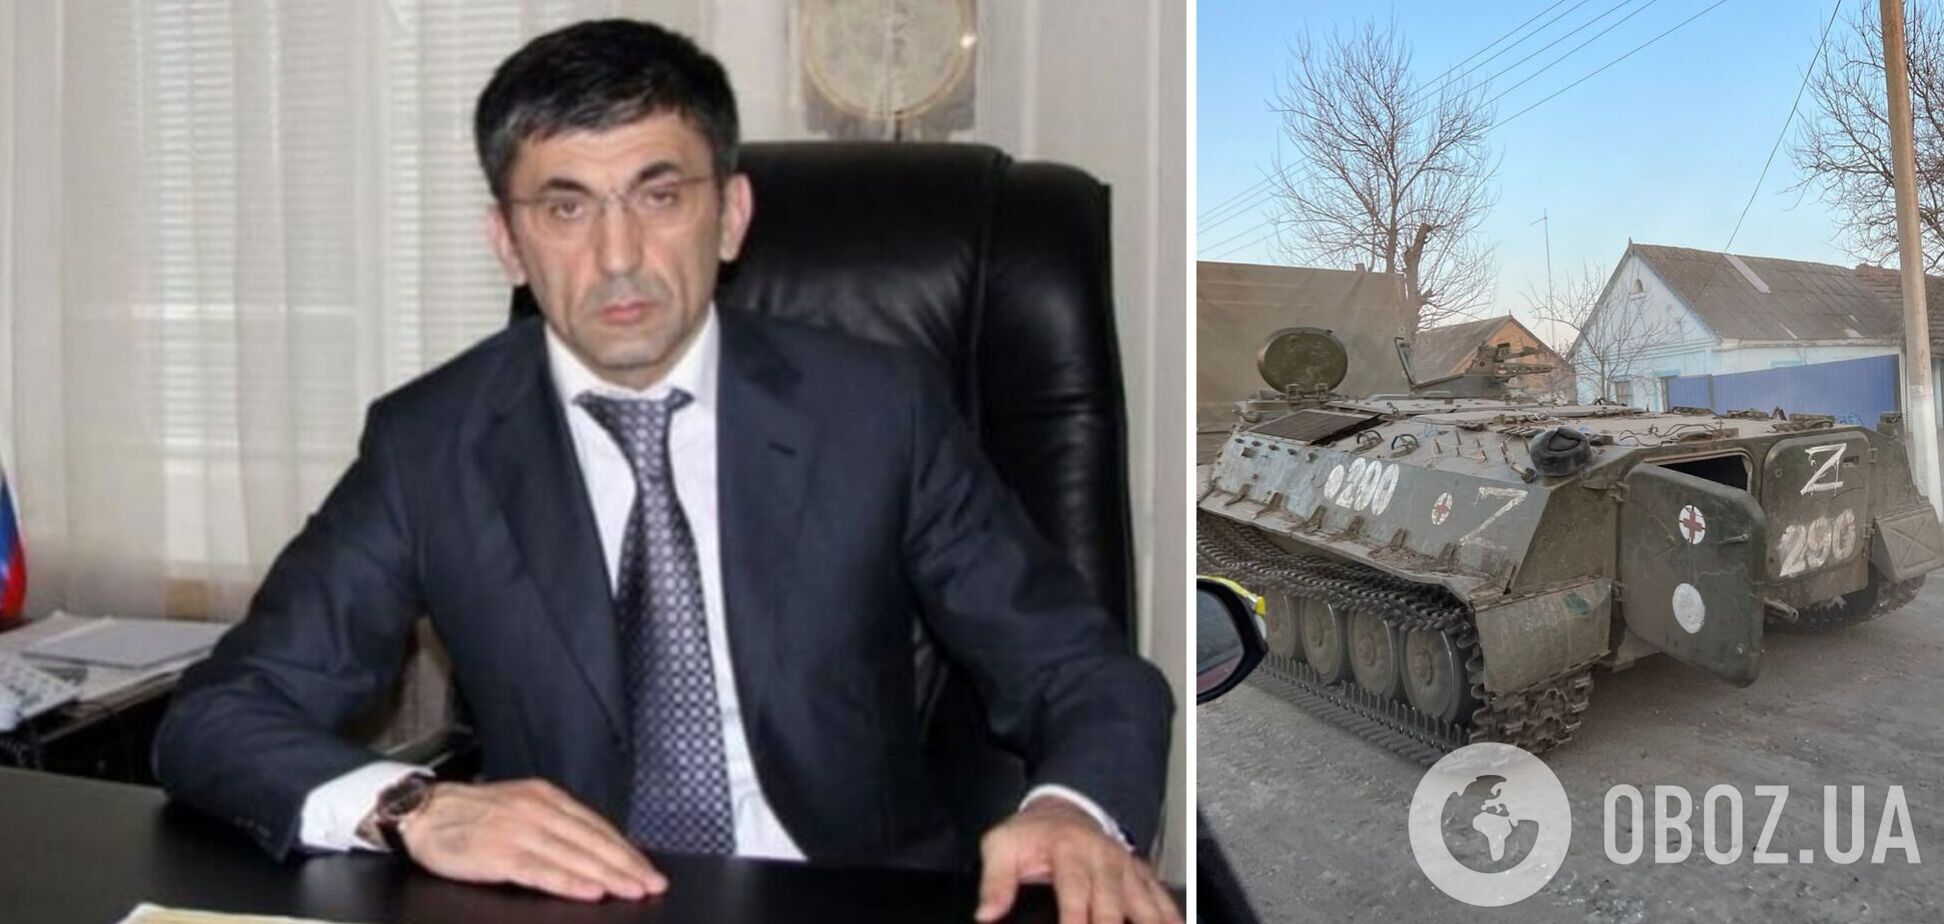 Экс-депутат Госдумы РФ Гаджиев спонсирует войну против Украины, но пытается легализоваться в США – СМИ